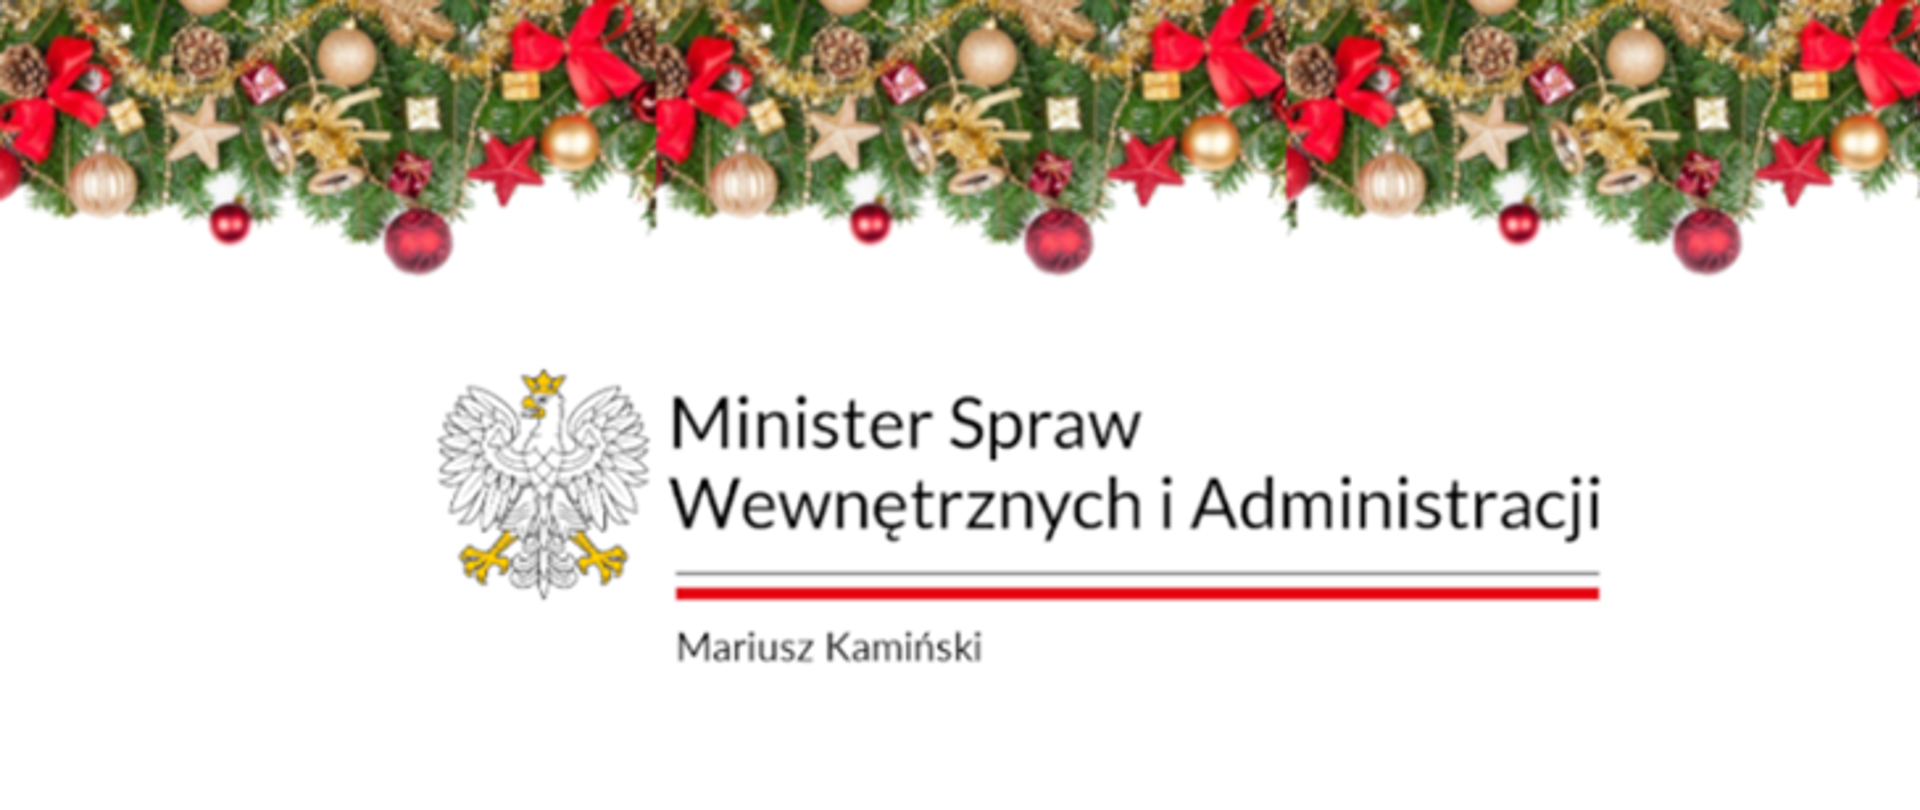 Życzenia Bożonarodzeniowe Ministra Spraw Wewnętrznych i Administracji